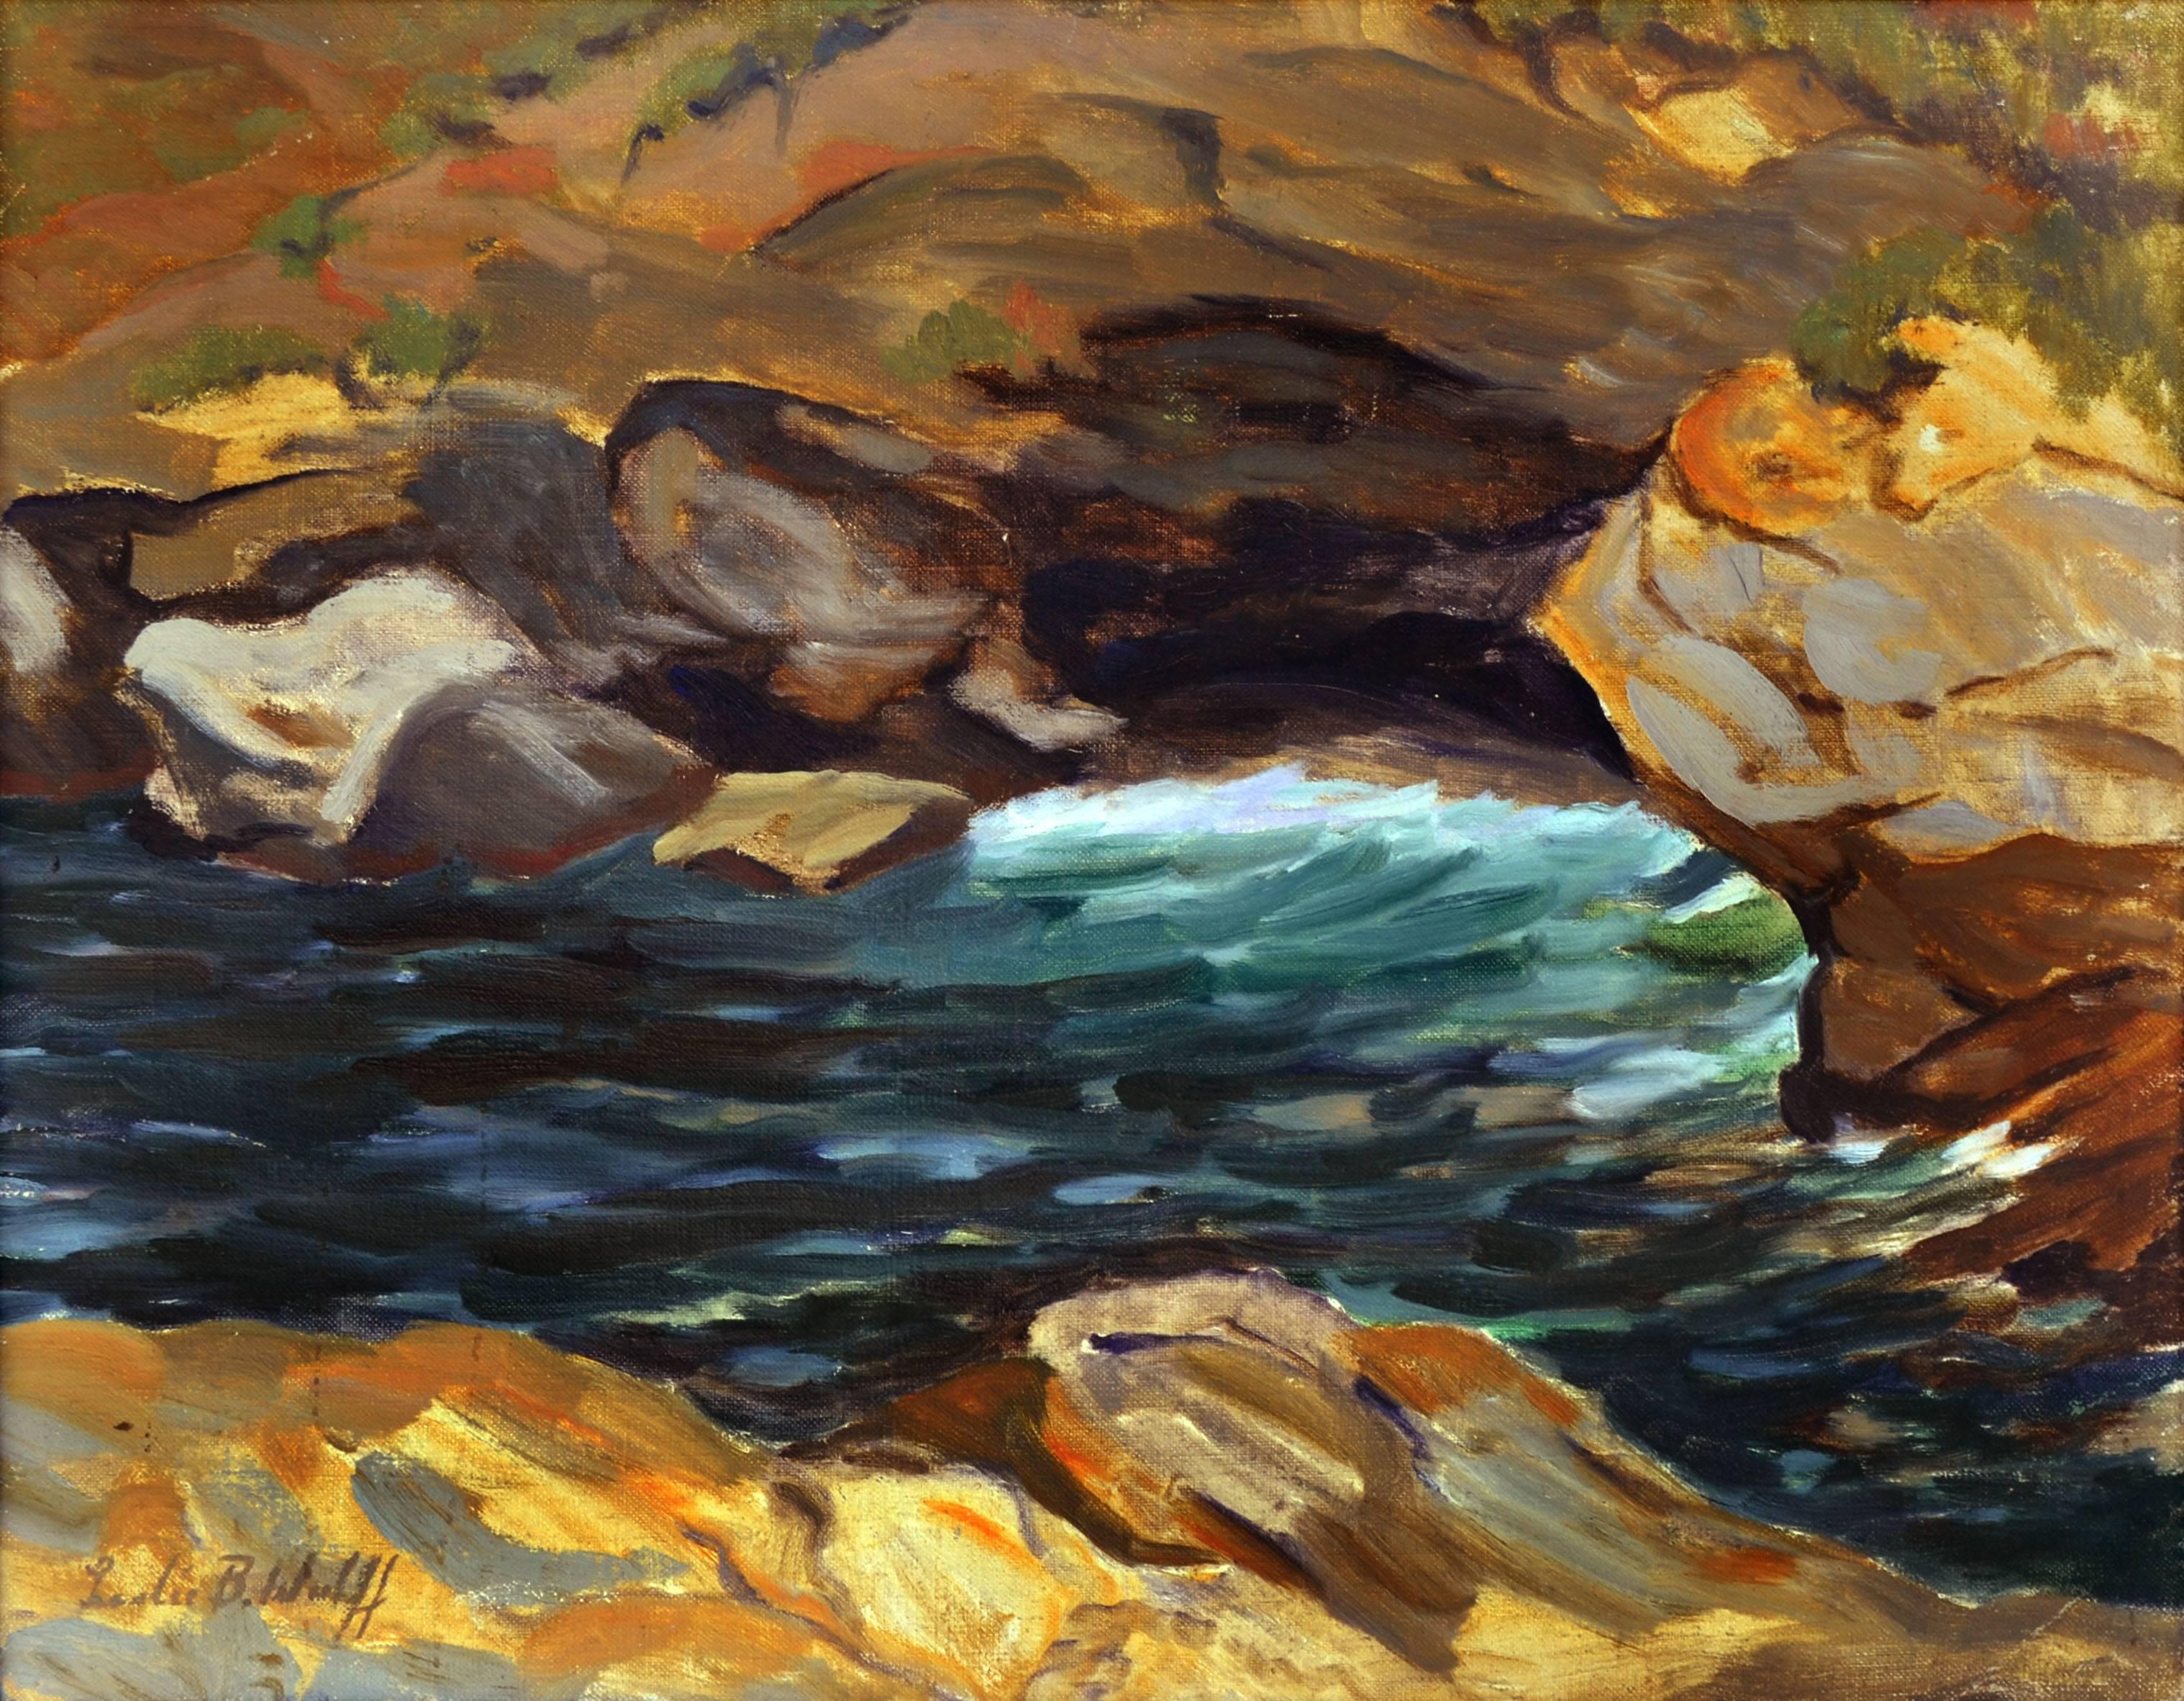 The Water on the Rocks - Abstrahierte Landschaft aus den 1930er Jahren – Painting von Leslie Bruner Wulff